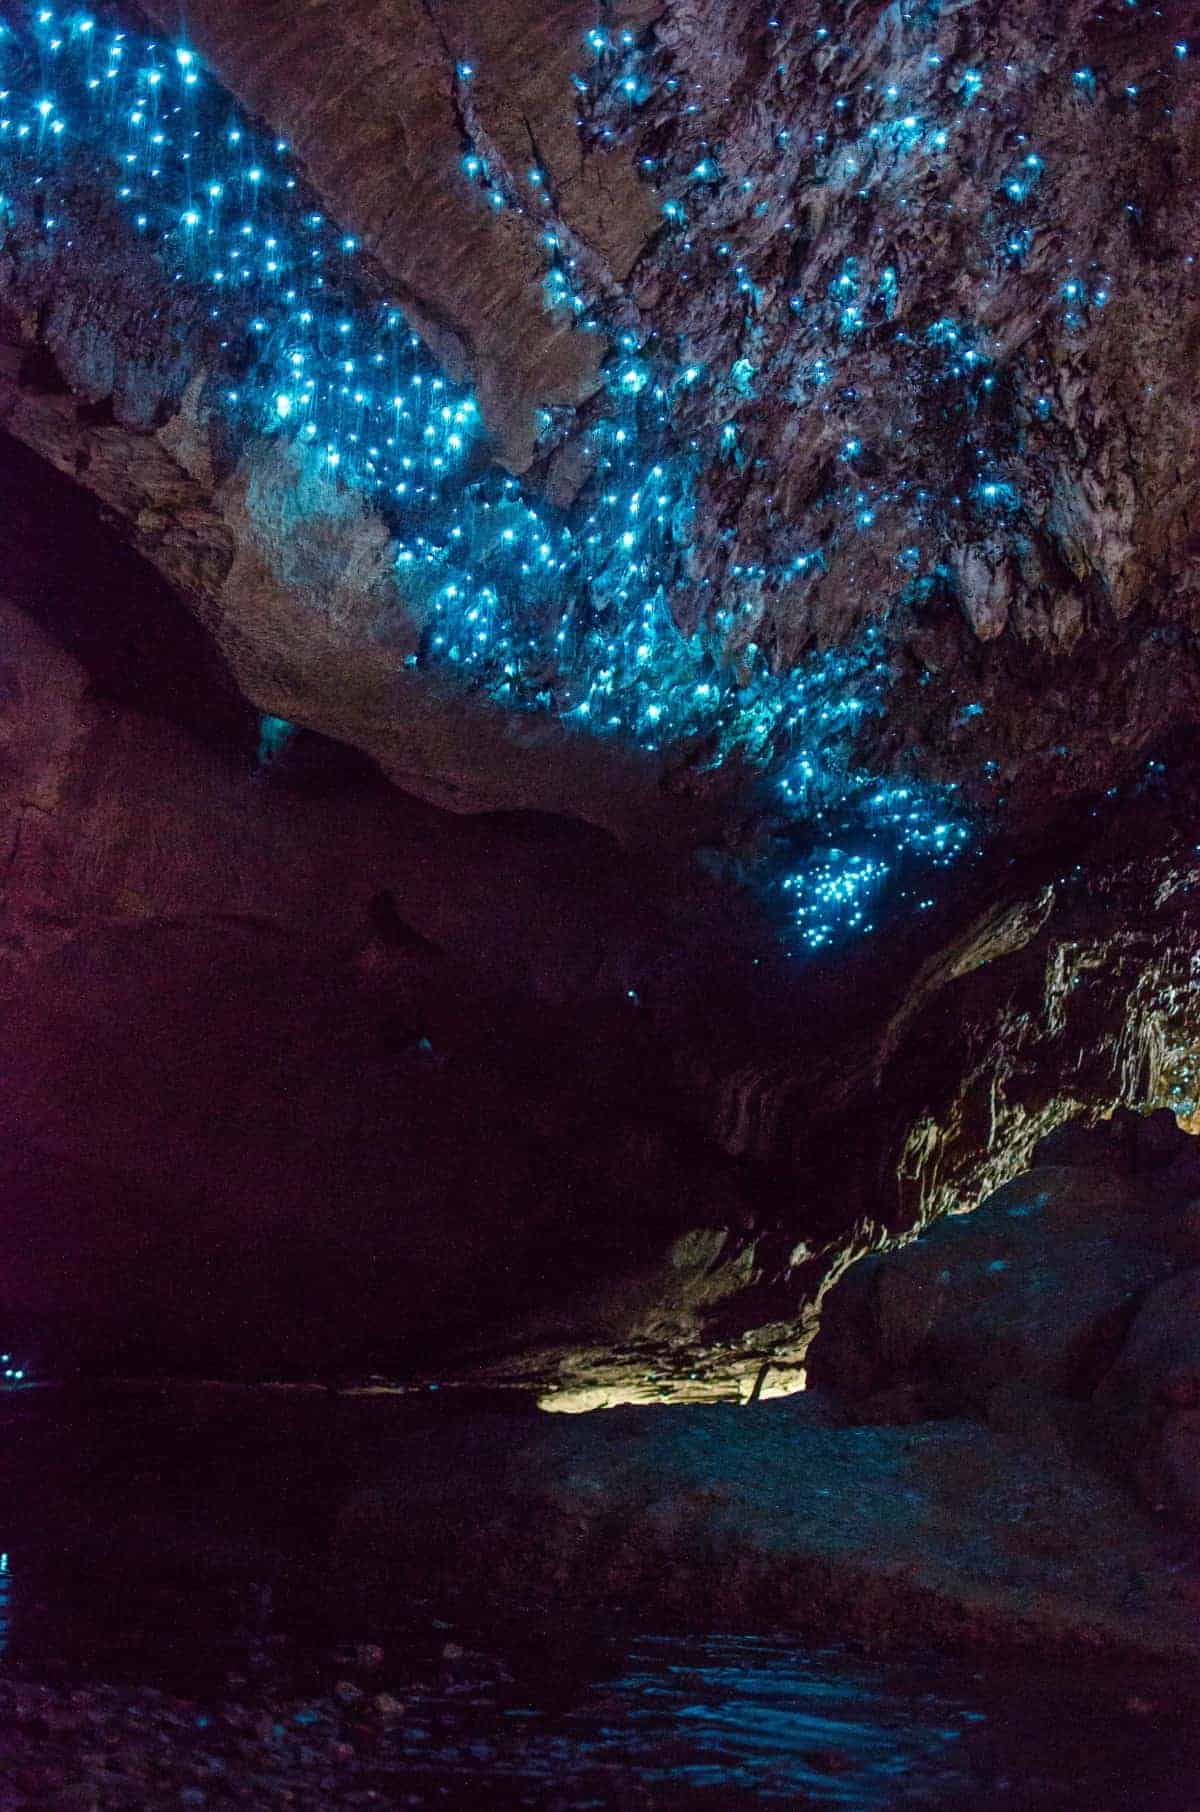 Biolumineszente Würmer hängen von der Decke einer Höhle in Neuseeland